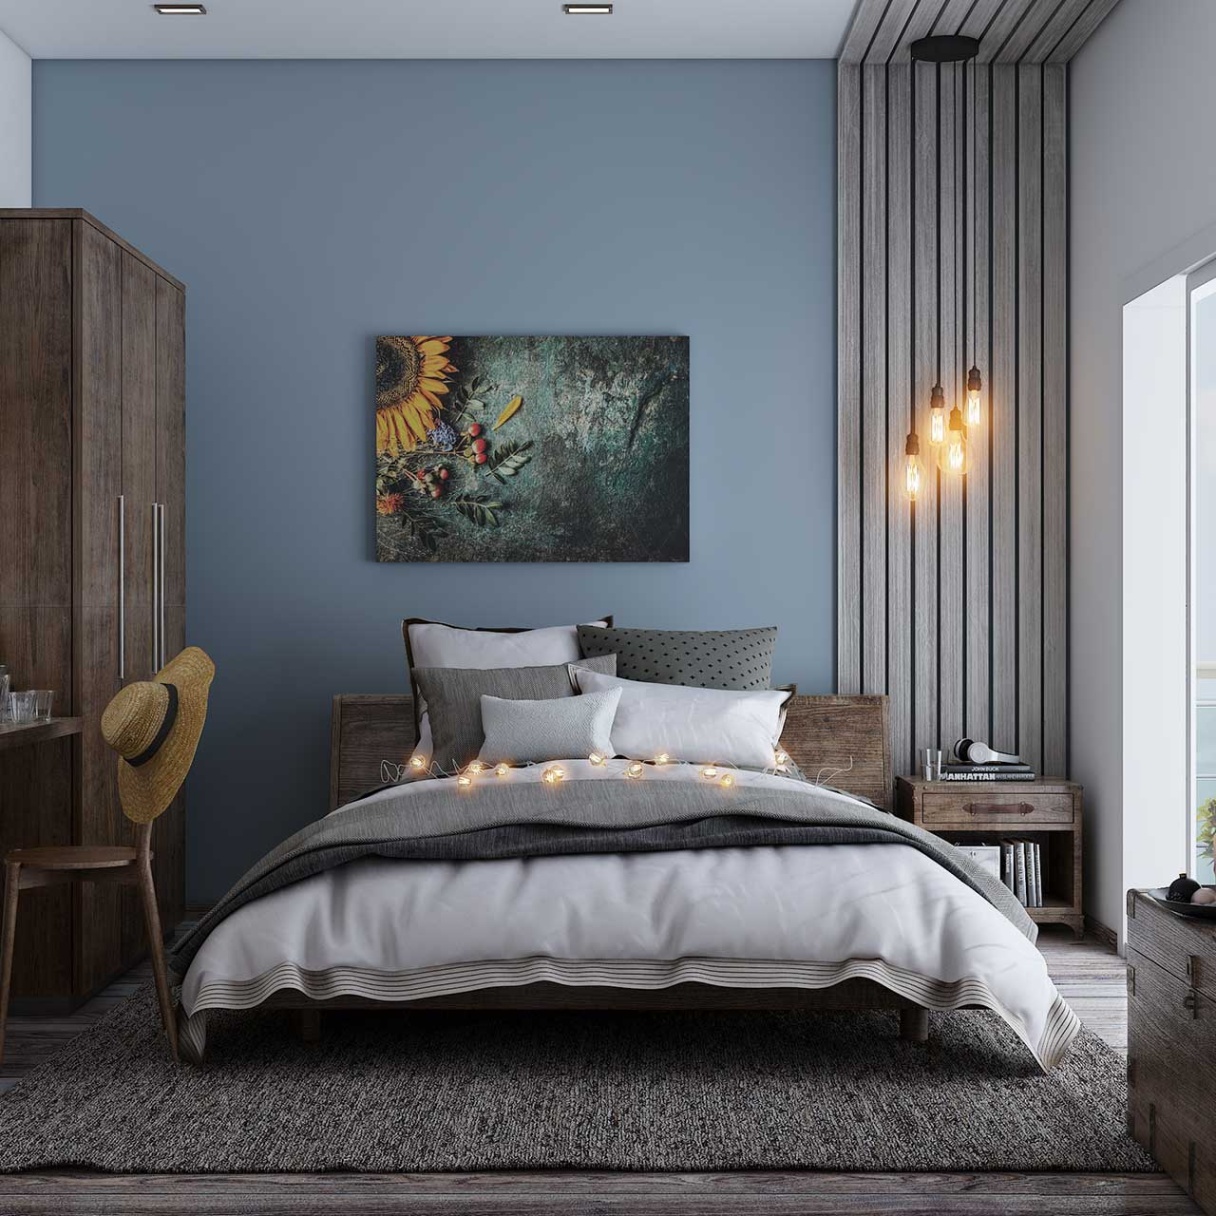 interior design ideas for bedroom Niche Utama Home Bedroom Interior Design Ideas  Design Cafe